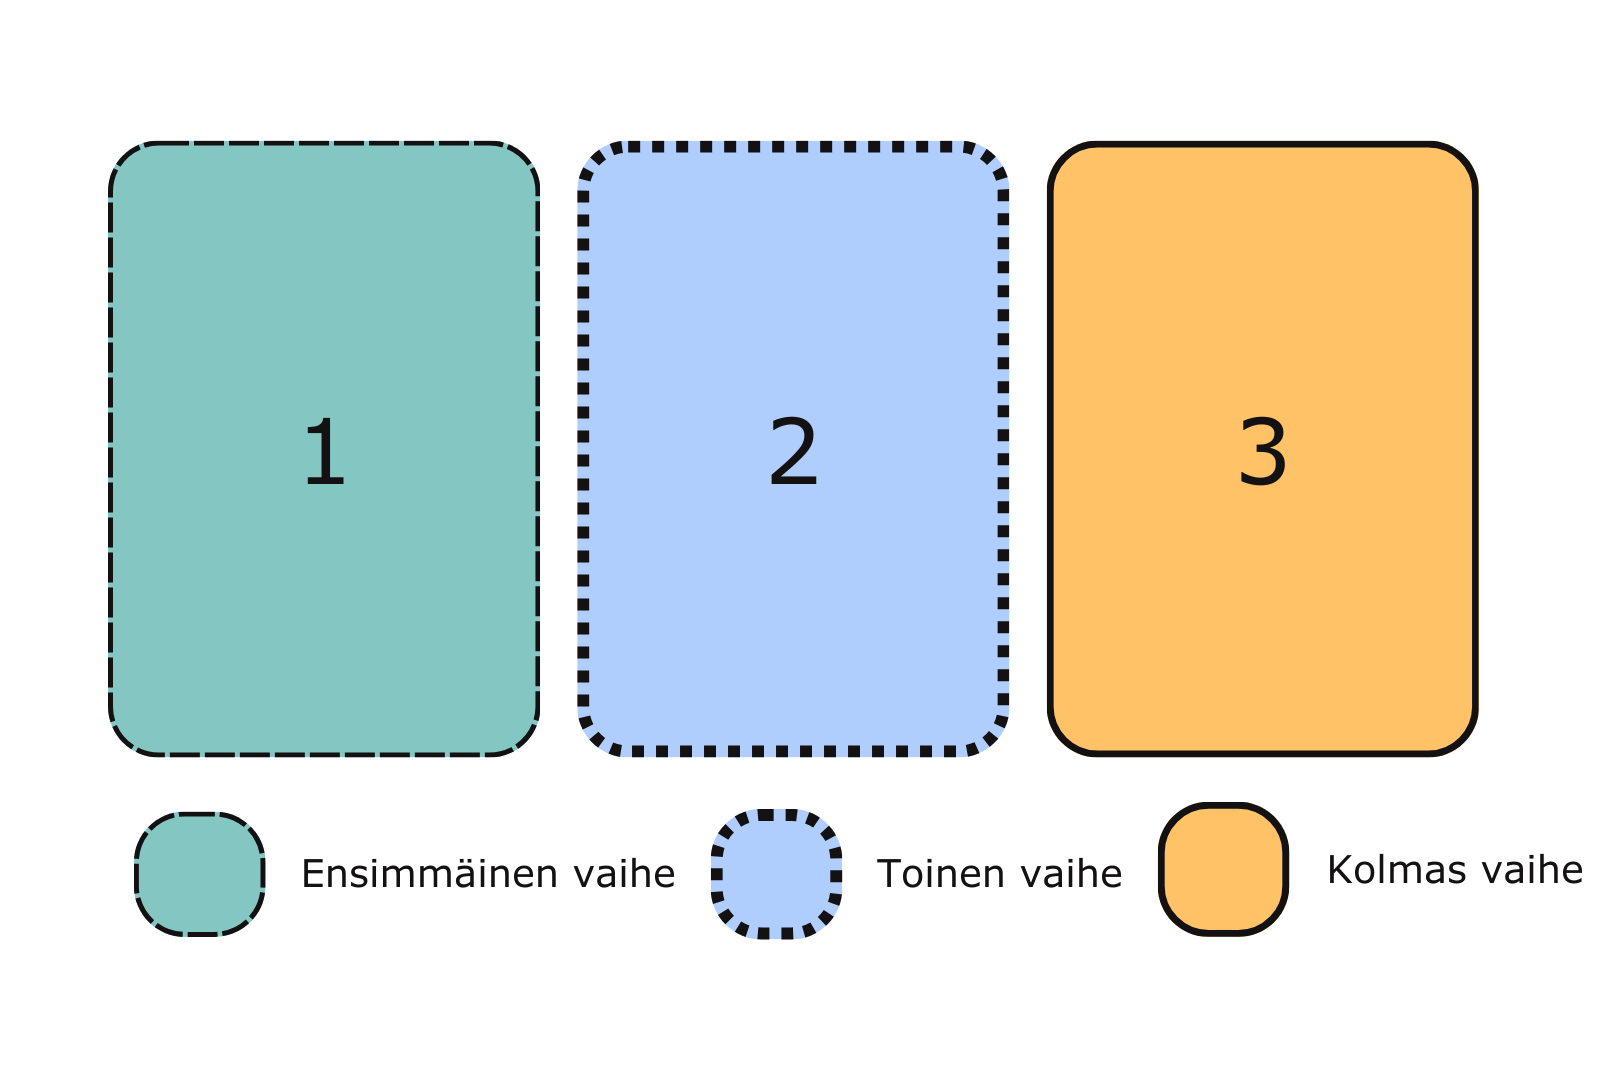 Kolme palkkia, joista ensimmäinen, vihreä katkoviivalla rajattu kuvastaa ensimmäistä vaihetta, toinen vaaleansininen, jossa on palloreunukset toista vaihetta ja kolmas yhtenäisesti rajattu kolmatta vaihetta.